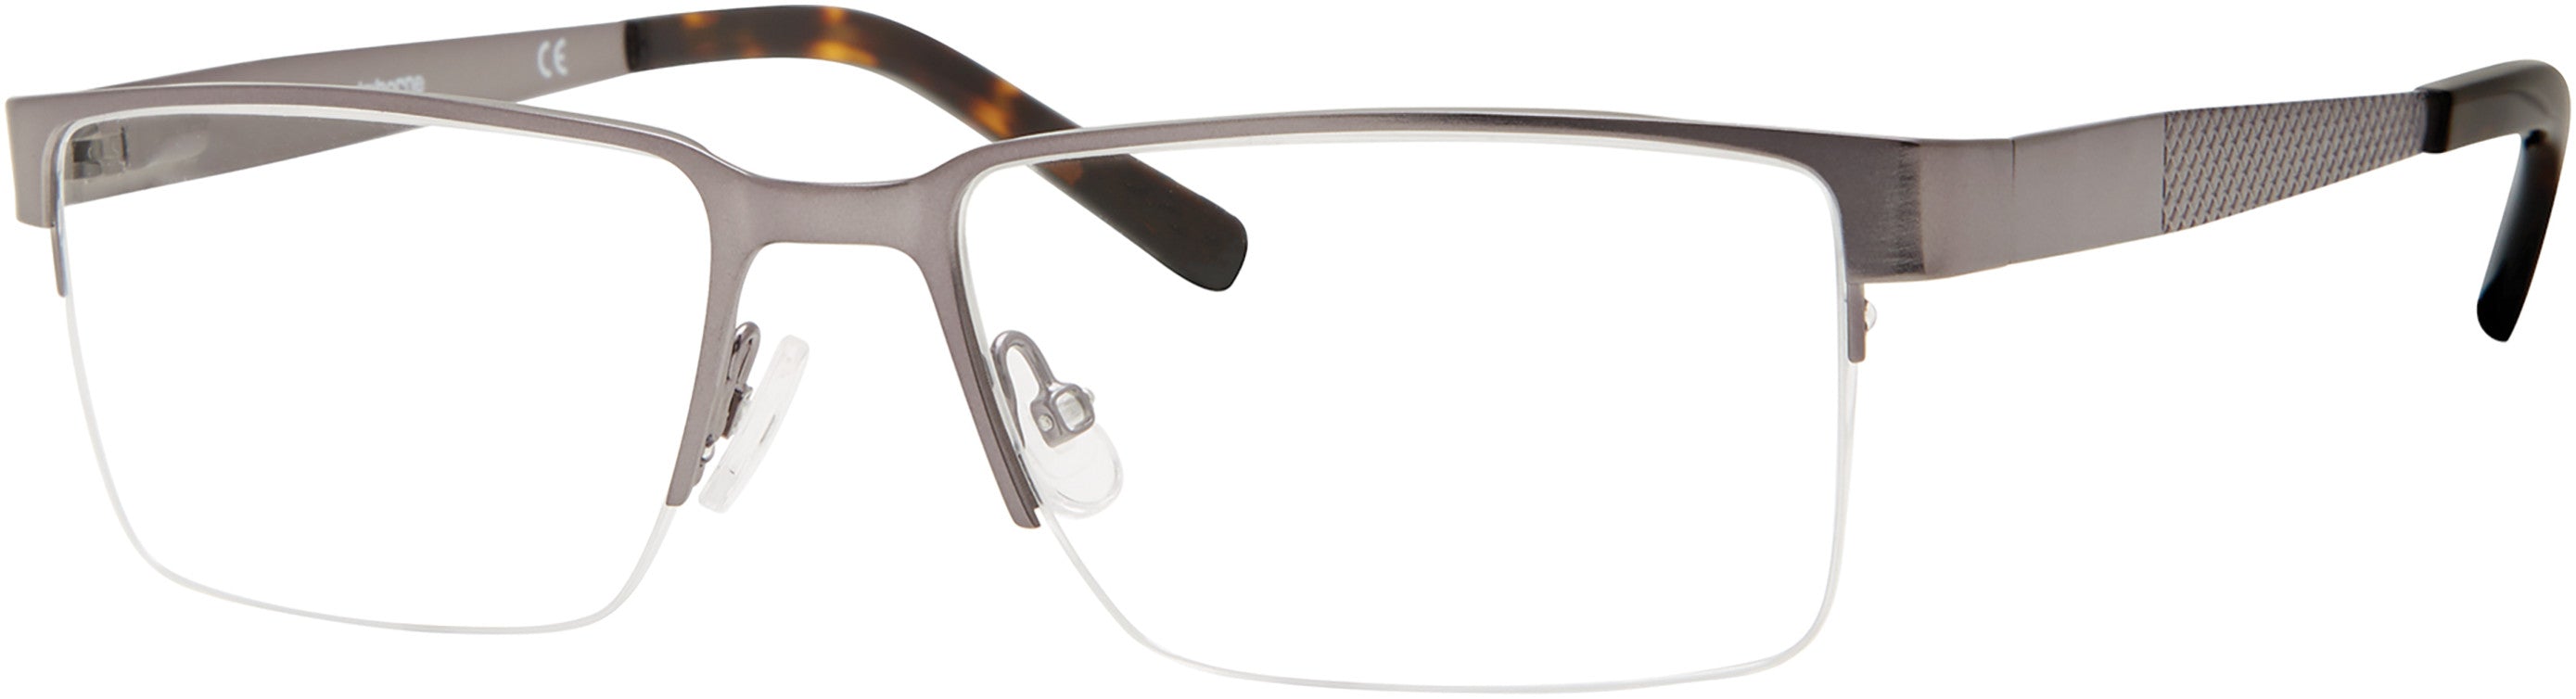  Claiborne 246 Rectangular Eyeglasses 06LB-06LB  Ruthenium (00 Demo Lens)